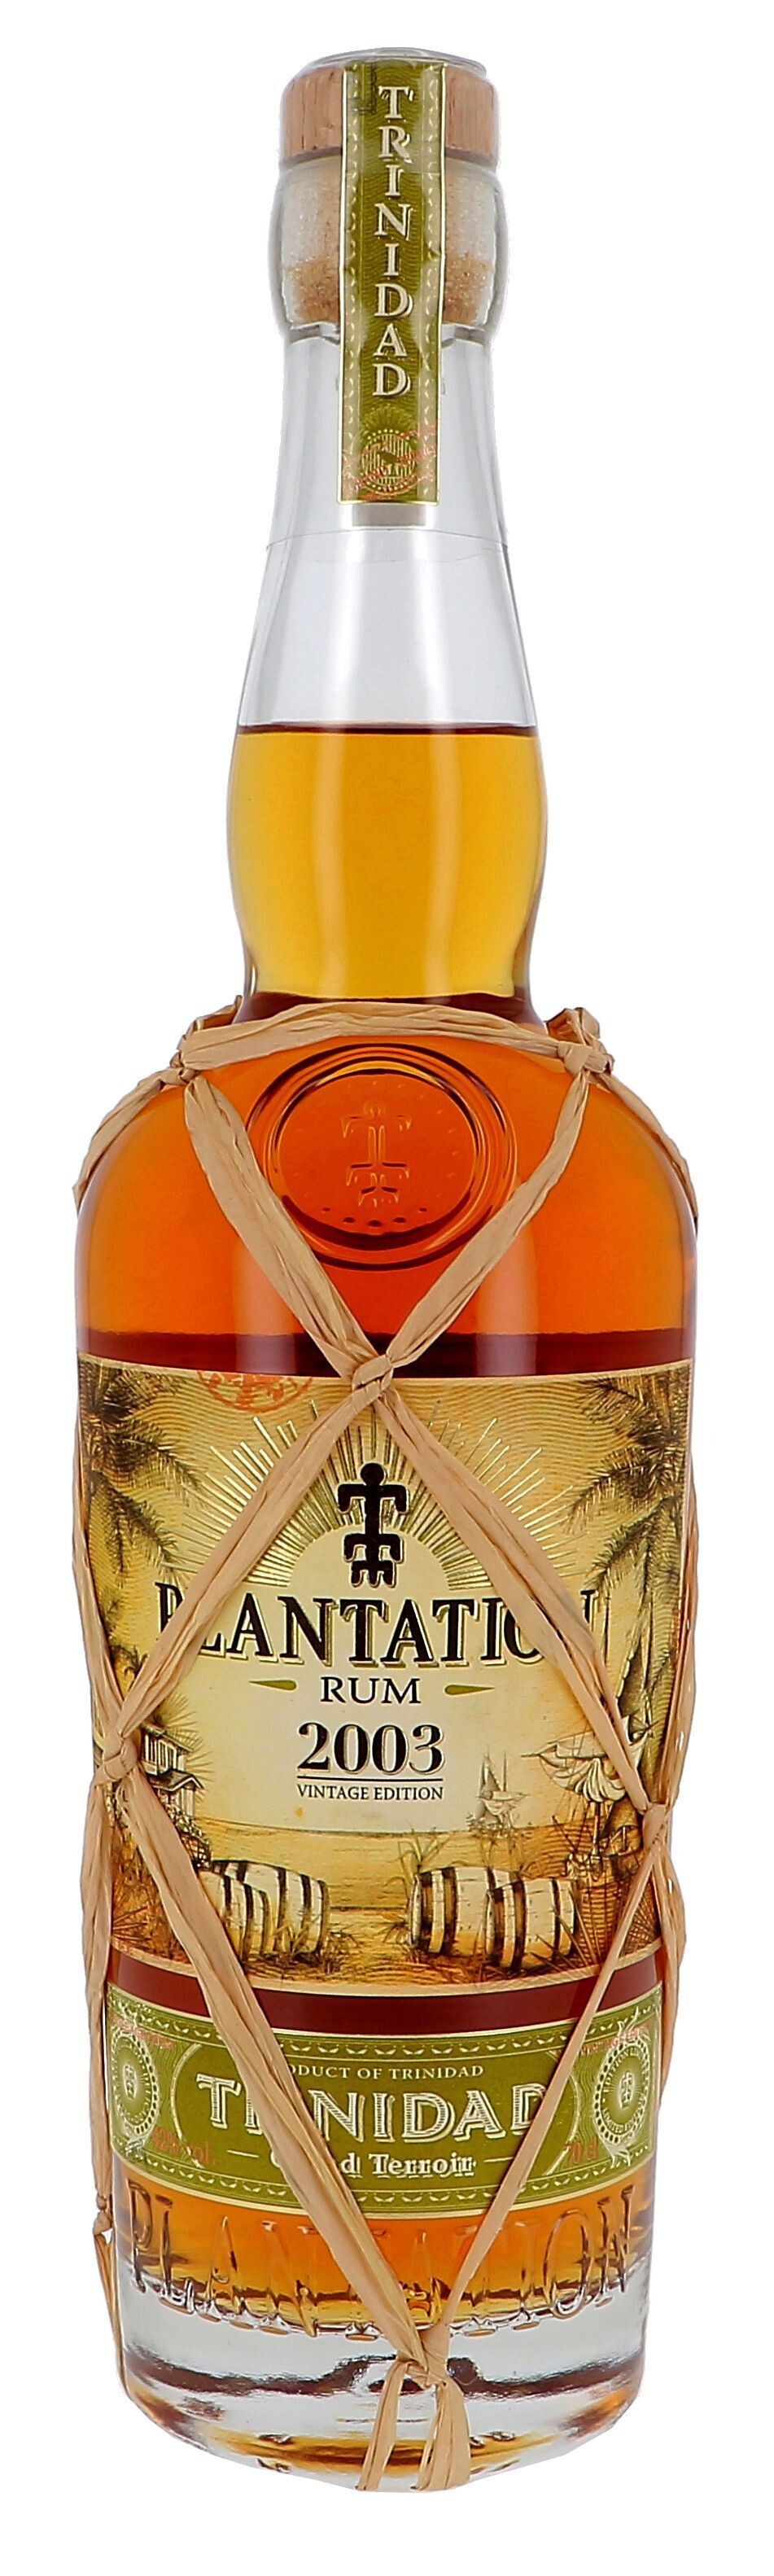 Rum Plantation Trinidad 2003 70cl 42% Vintage Limited Edition Rare